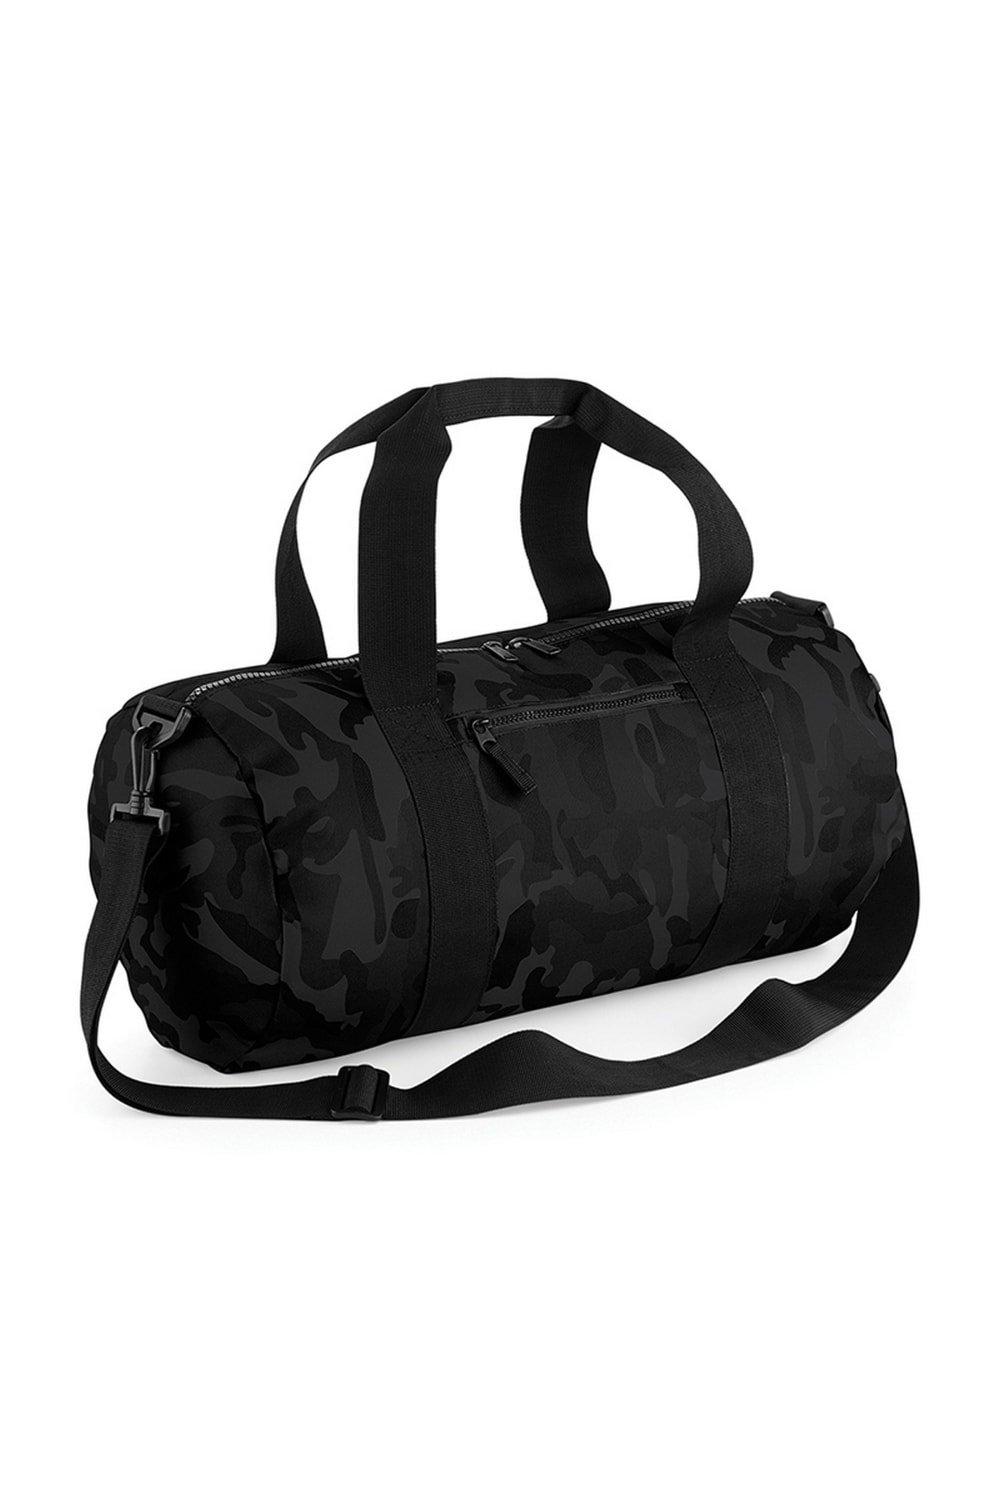 Камуфляжная бочка/спортивная сумка (20 литров) Bagbase, черный штоф бочка огнеопасно 5 литров